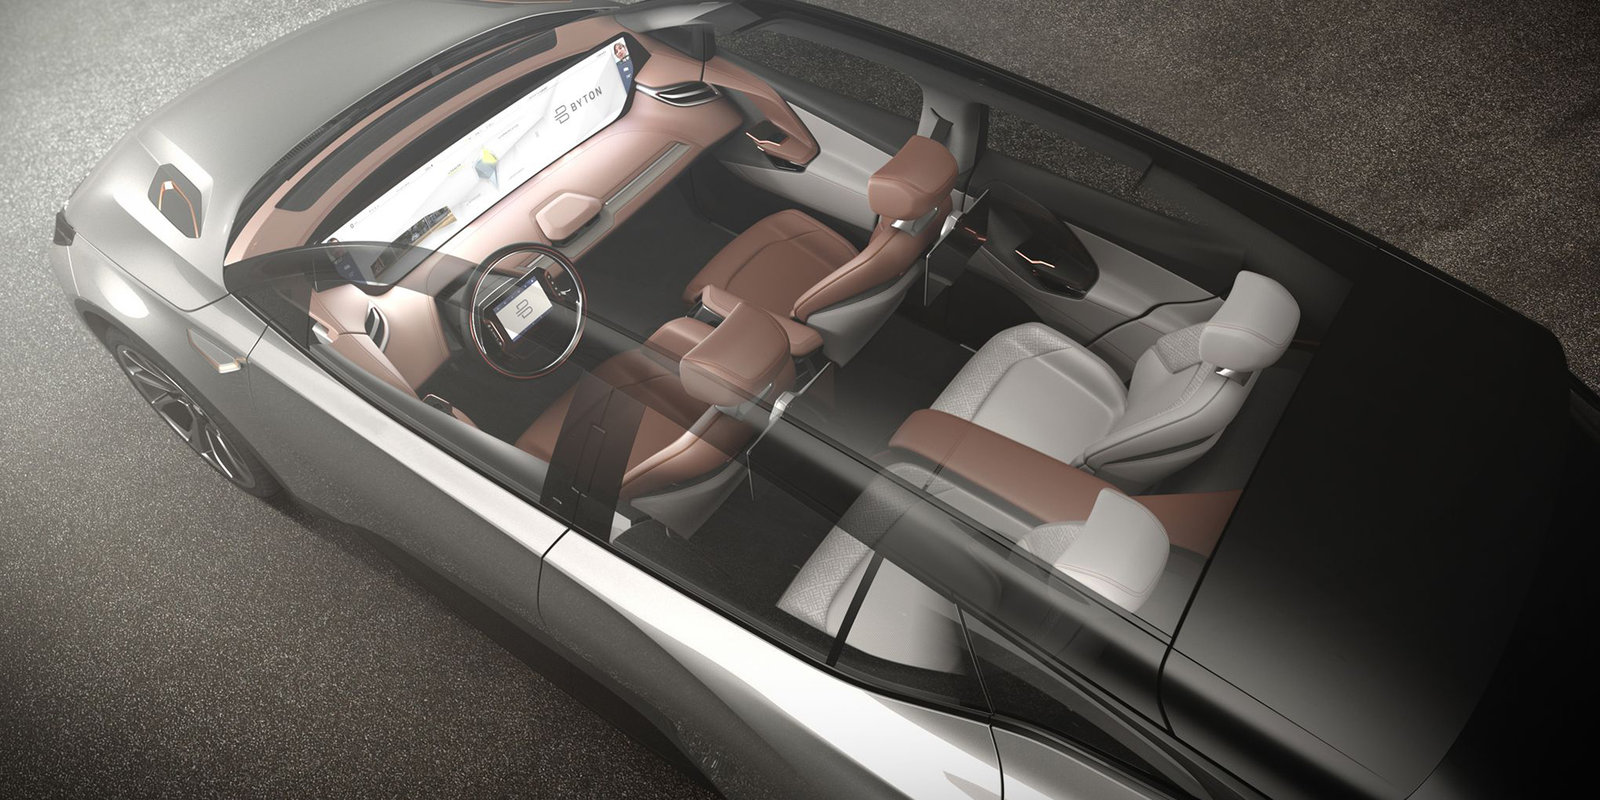 BYTON Concept tanıtıldı: 49 inç dokunmatik ekran, 523 km menzil ve otonom sürüş